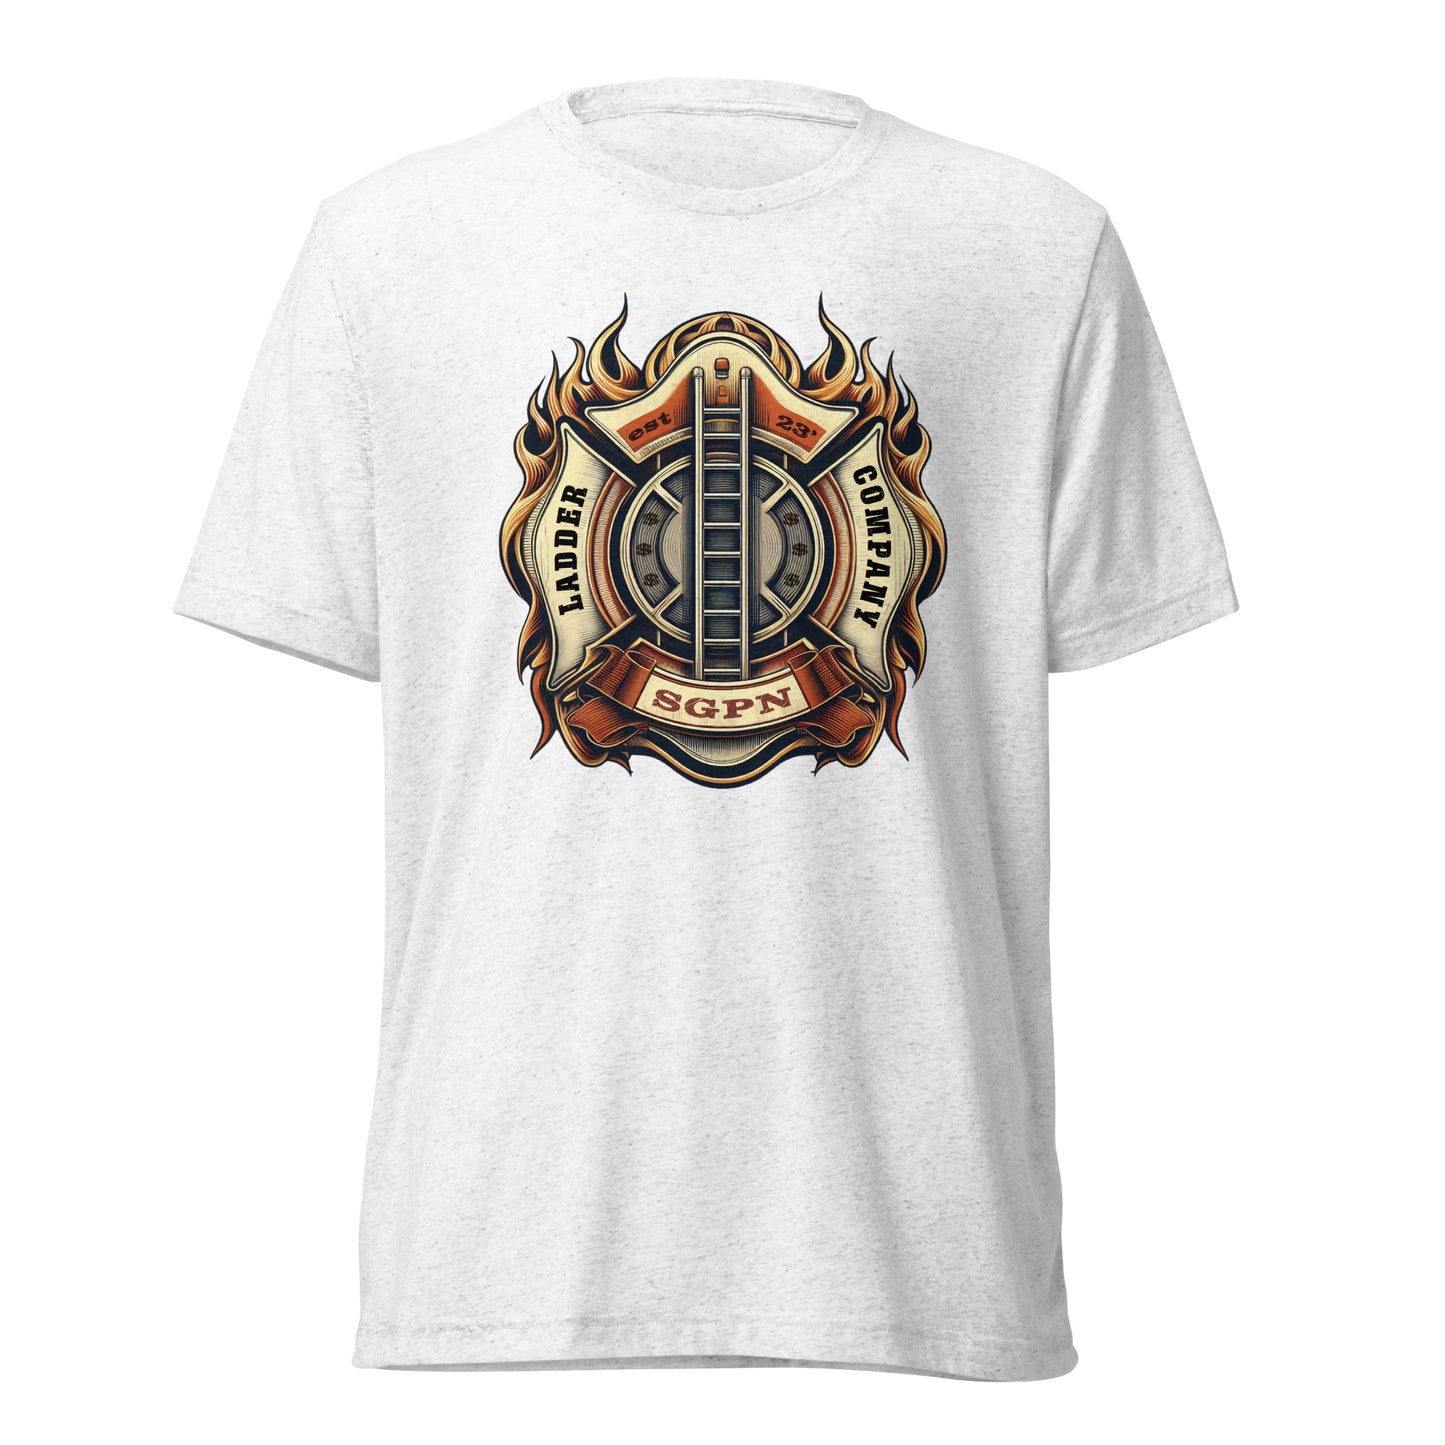 SGPN Ladder Company - est 23' - Short sleeve t-shirt